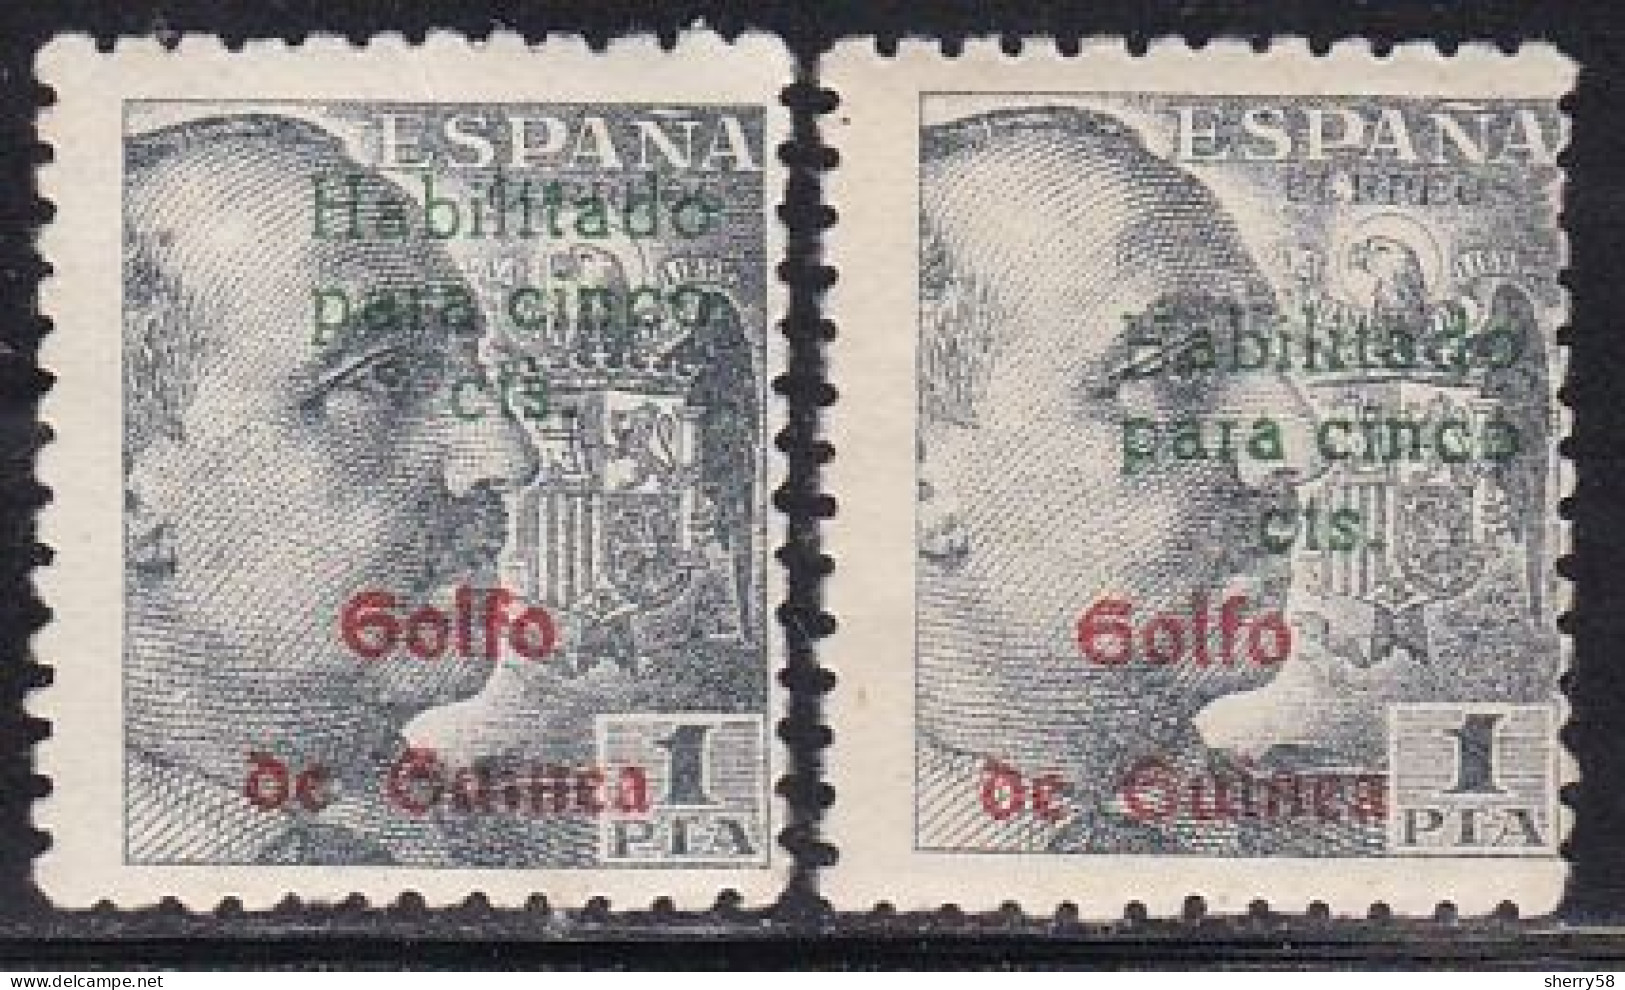 GUINEA ESPAÑOLA-1949-ED. 273A SELLOS DE ESPAÑA HABILITADOS. GENERAL FRANCO -2 Ejemplares. Uno Con Habilitación Desplazad - Guinea Spagnola